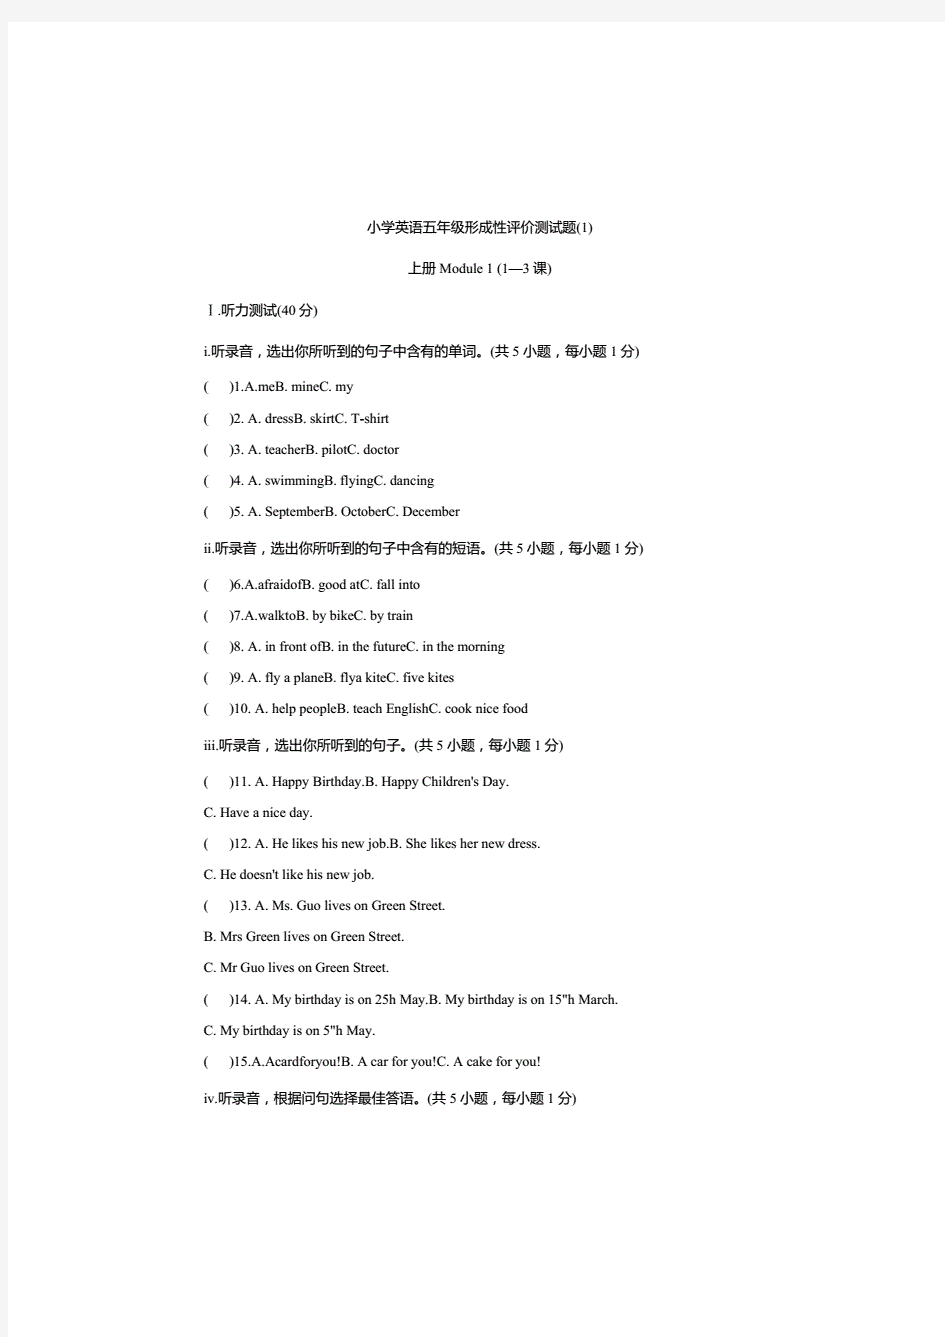 新版牛津上海版(深圳版)小学英语五年级上册单元测试题(全册).(20210219074107)